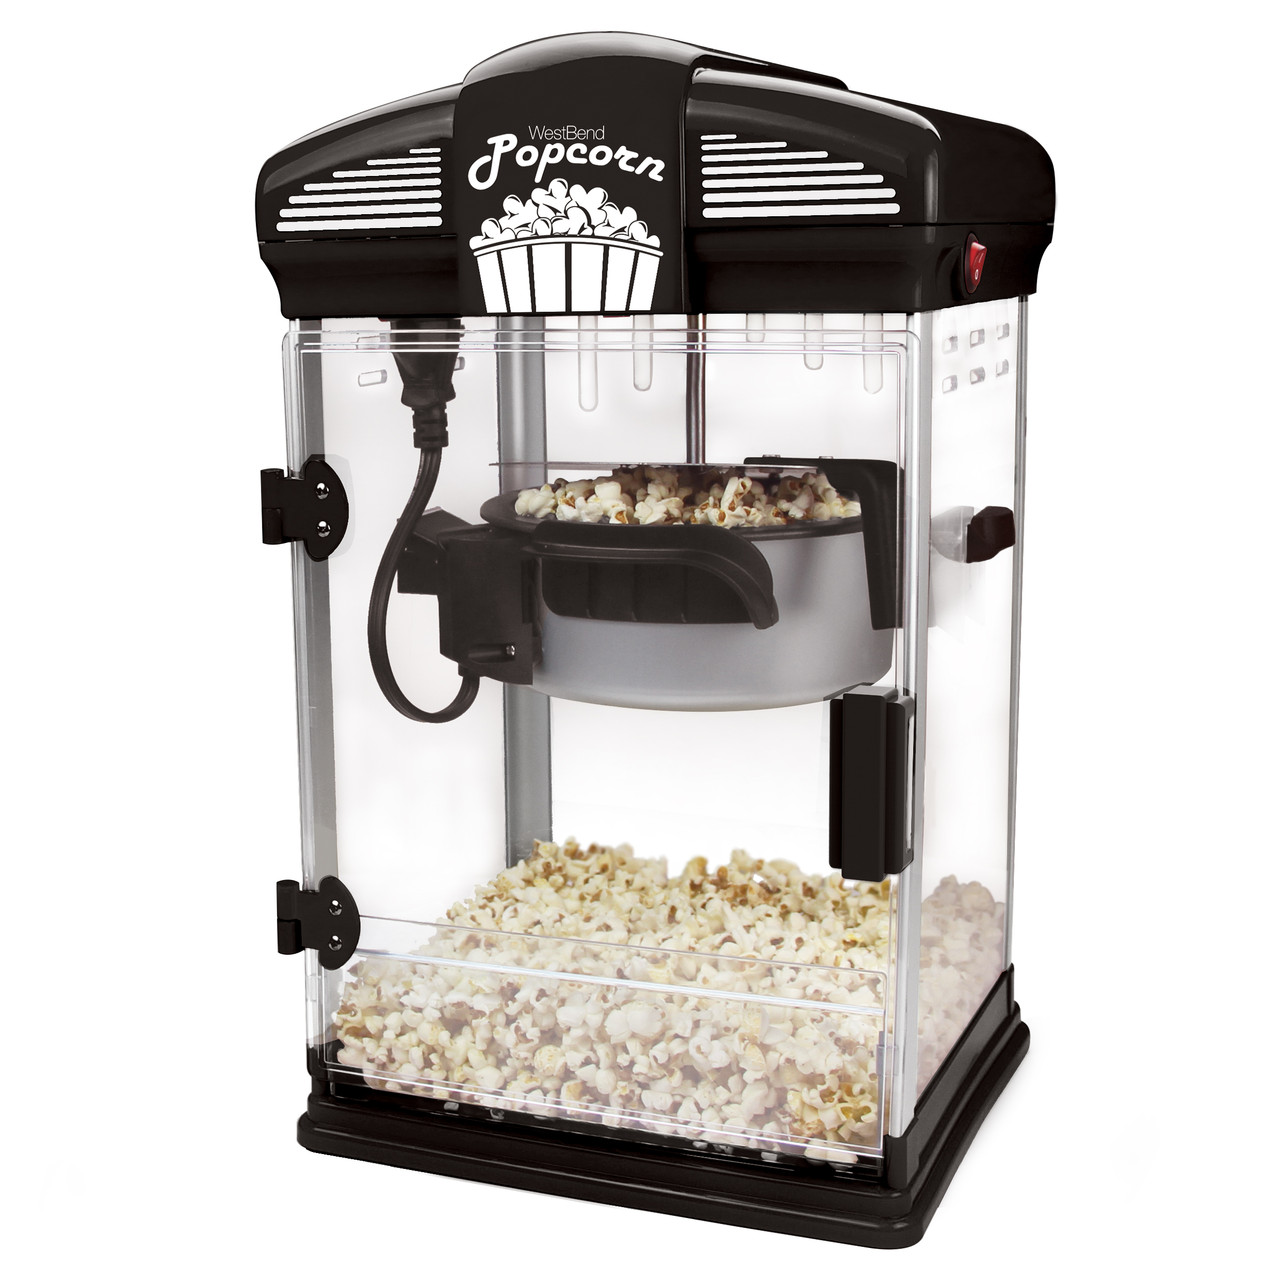 Stir Crazy Popcorn Popper with Large Lid for Serving Bowl - Stir Crazy  Popcorn Poppers